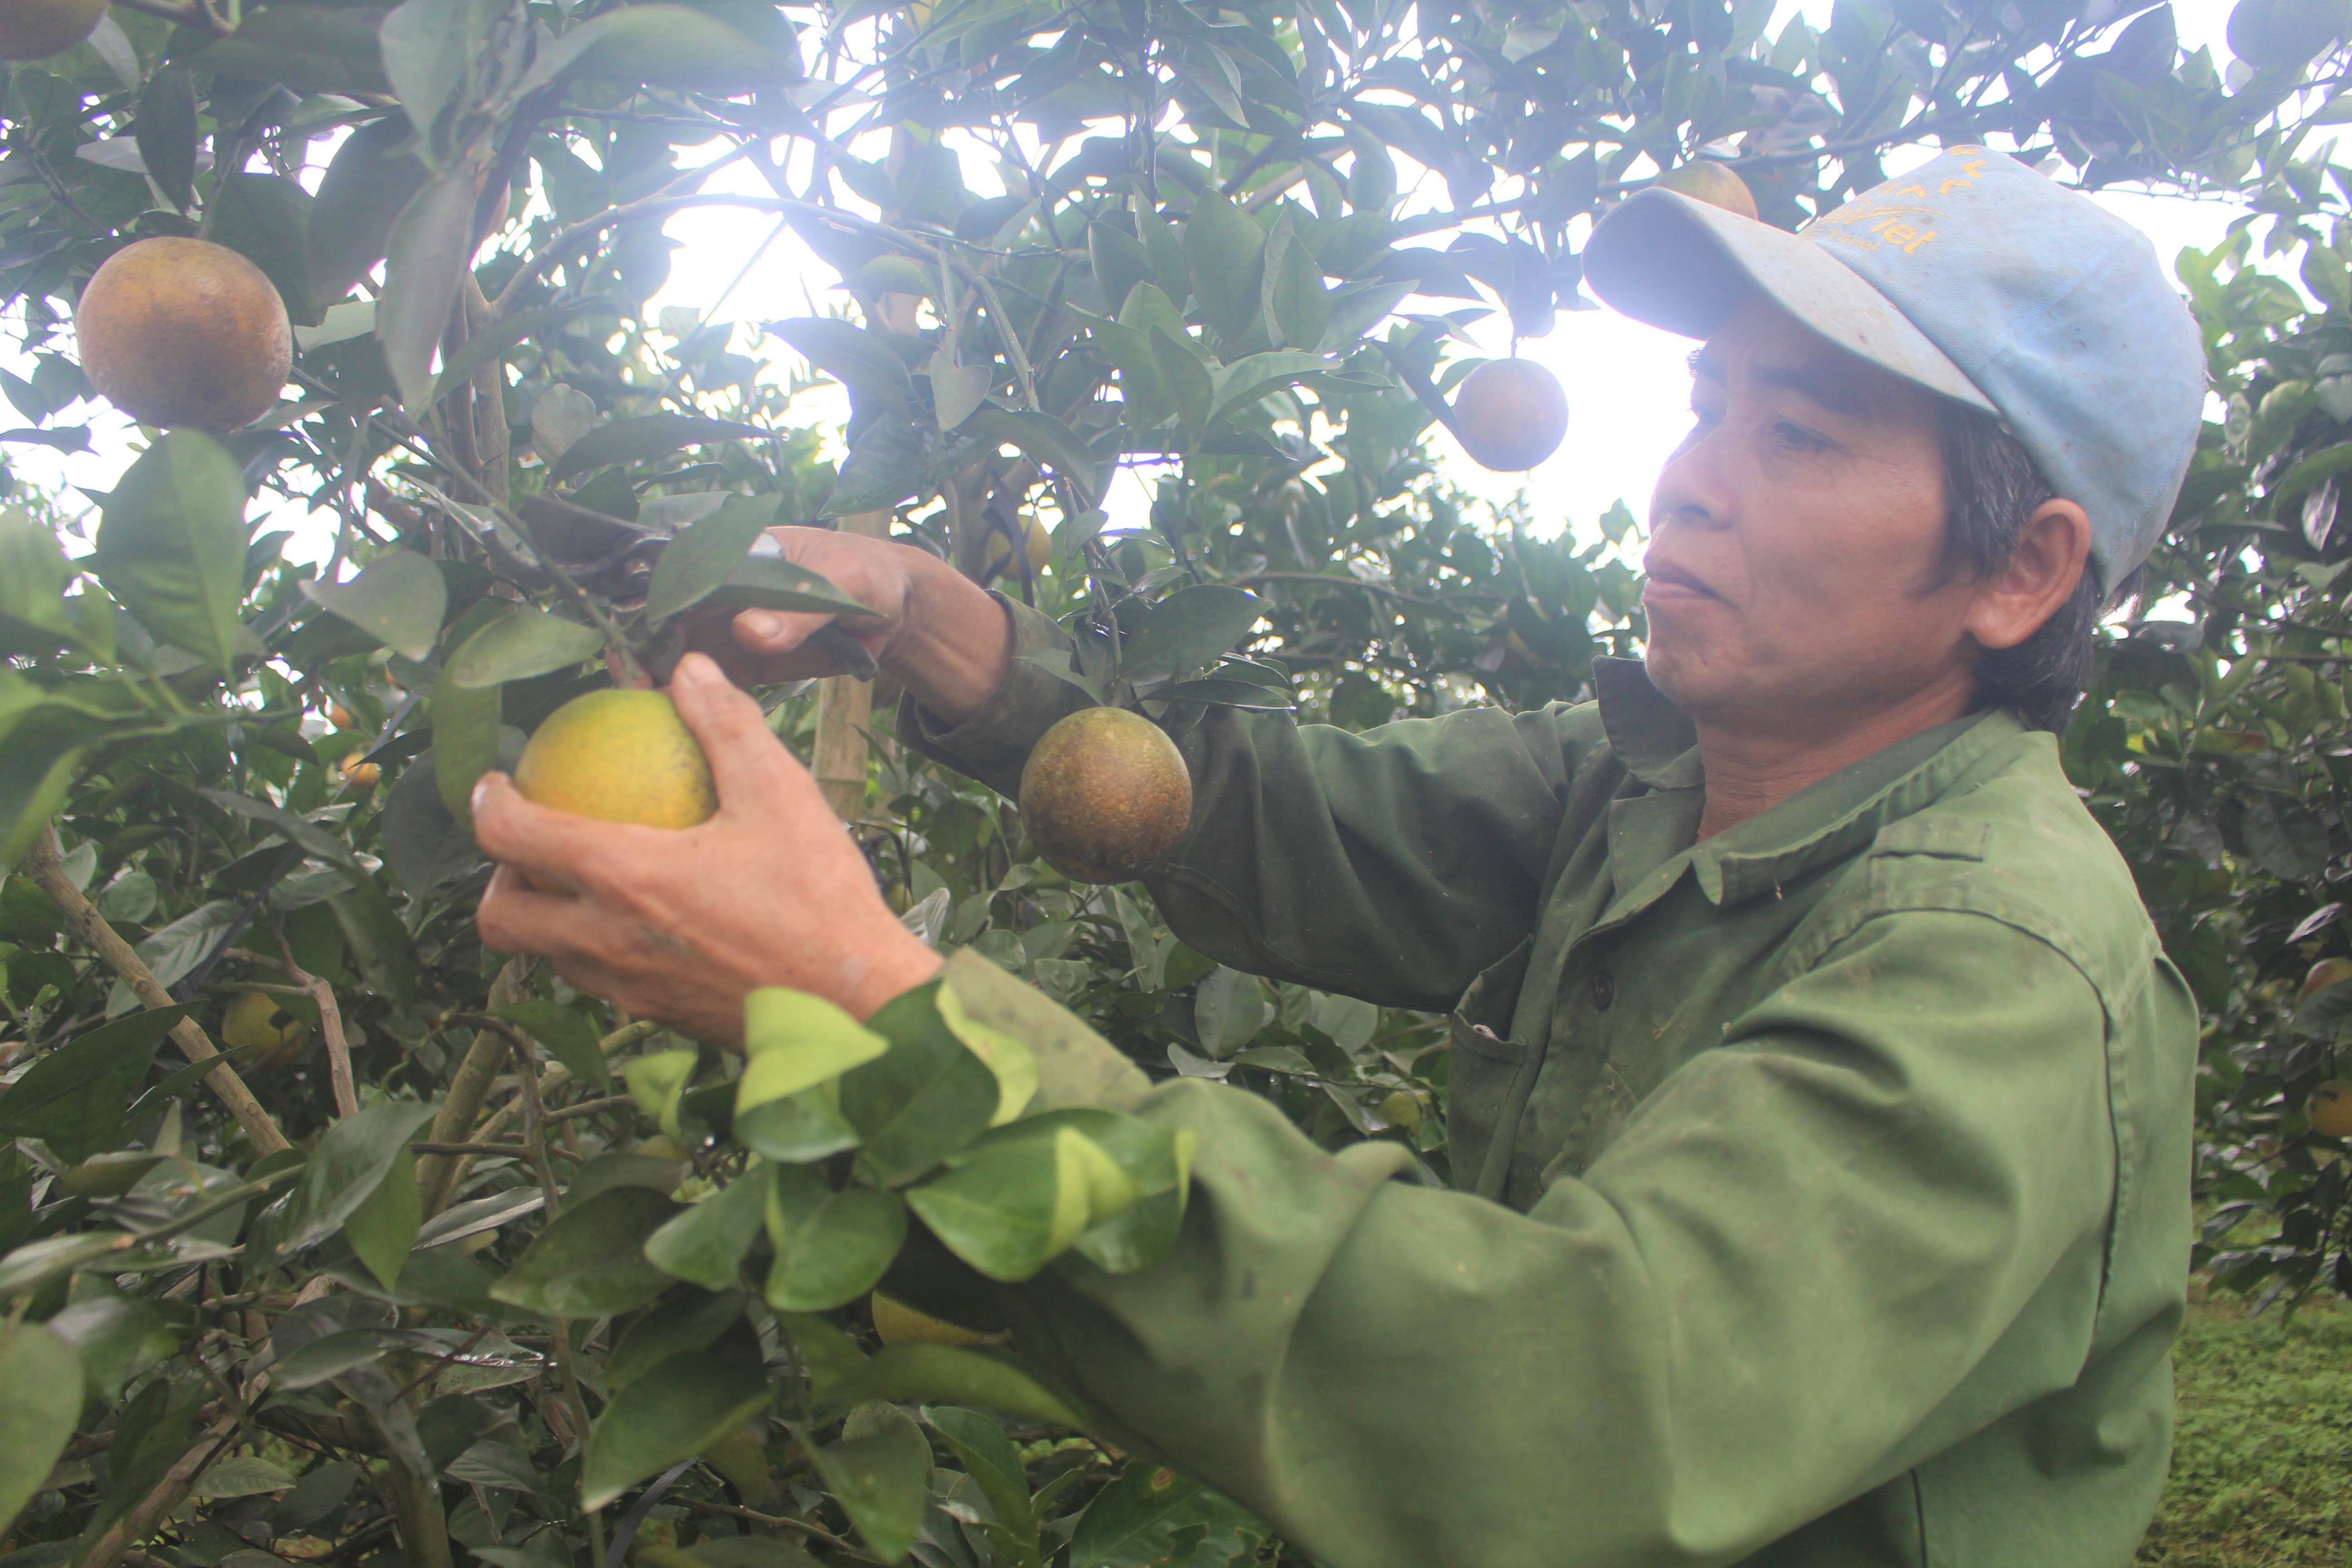 Mô hình trồng cam ở Như Xuân đem lại hiệu quả kinh tế cao cho người dân